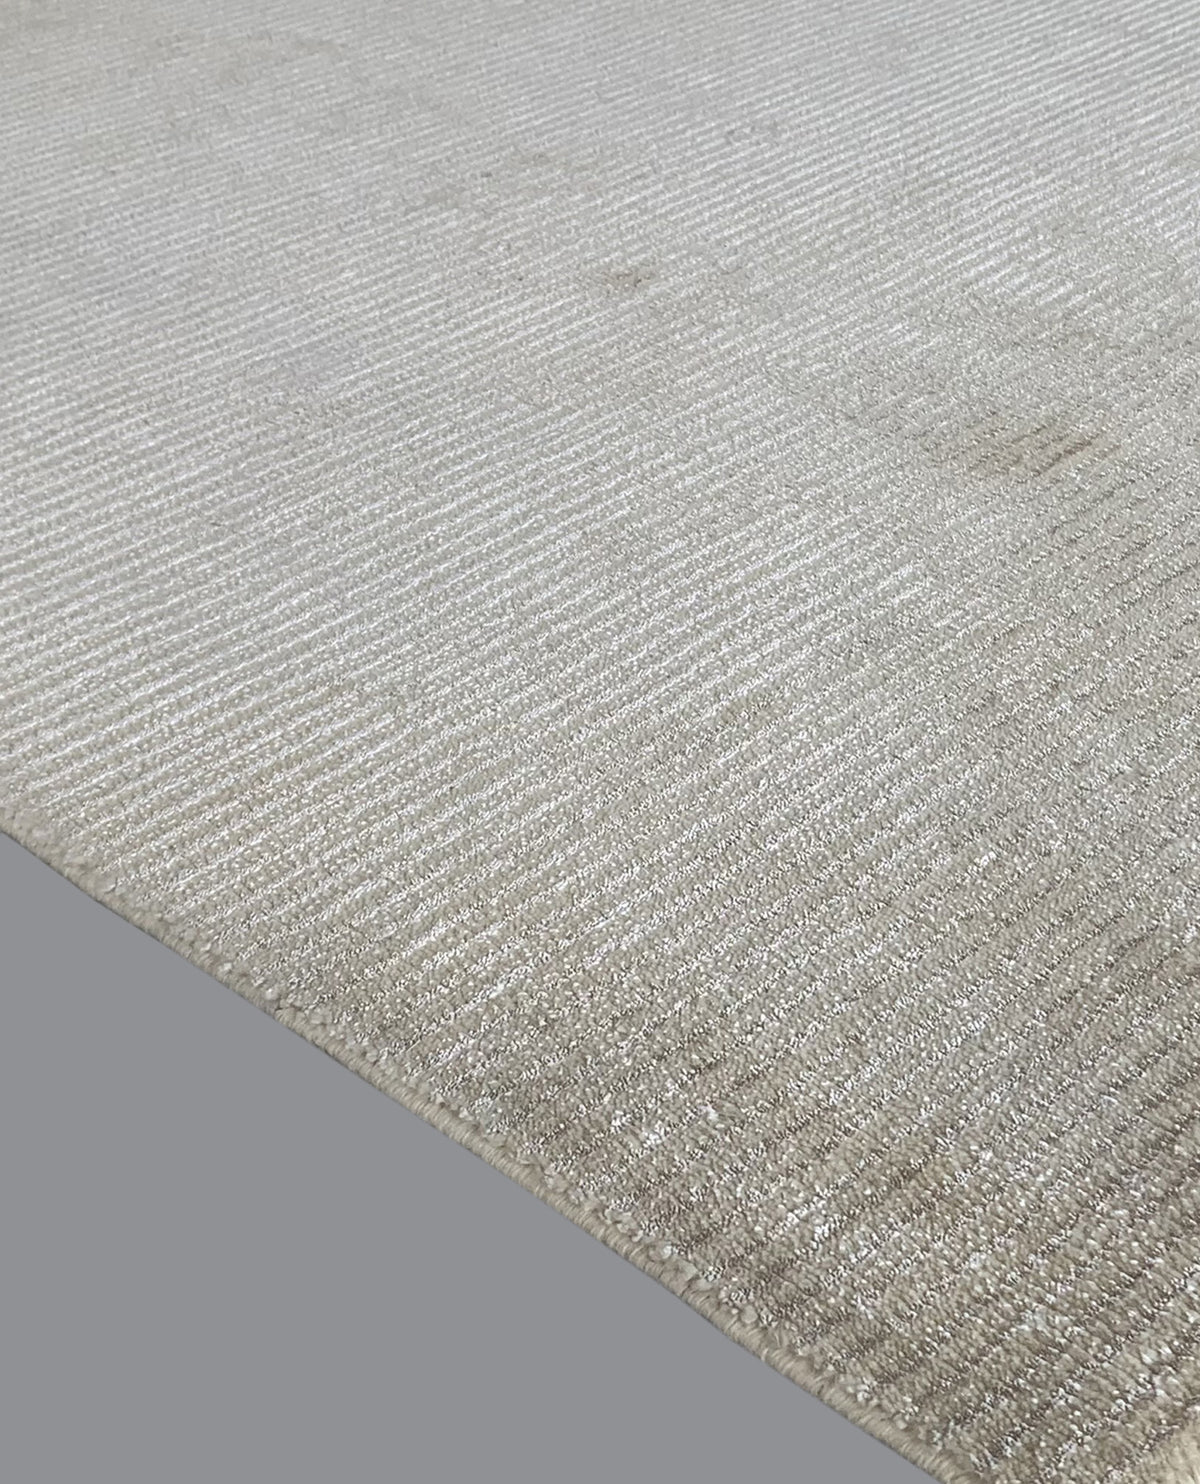 Rugslane Plain White Carpet 4ft X 6ft